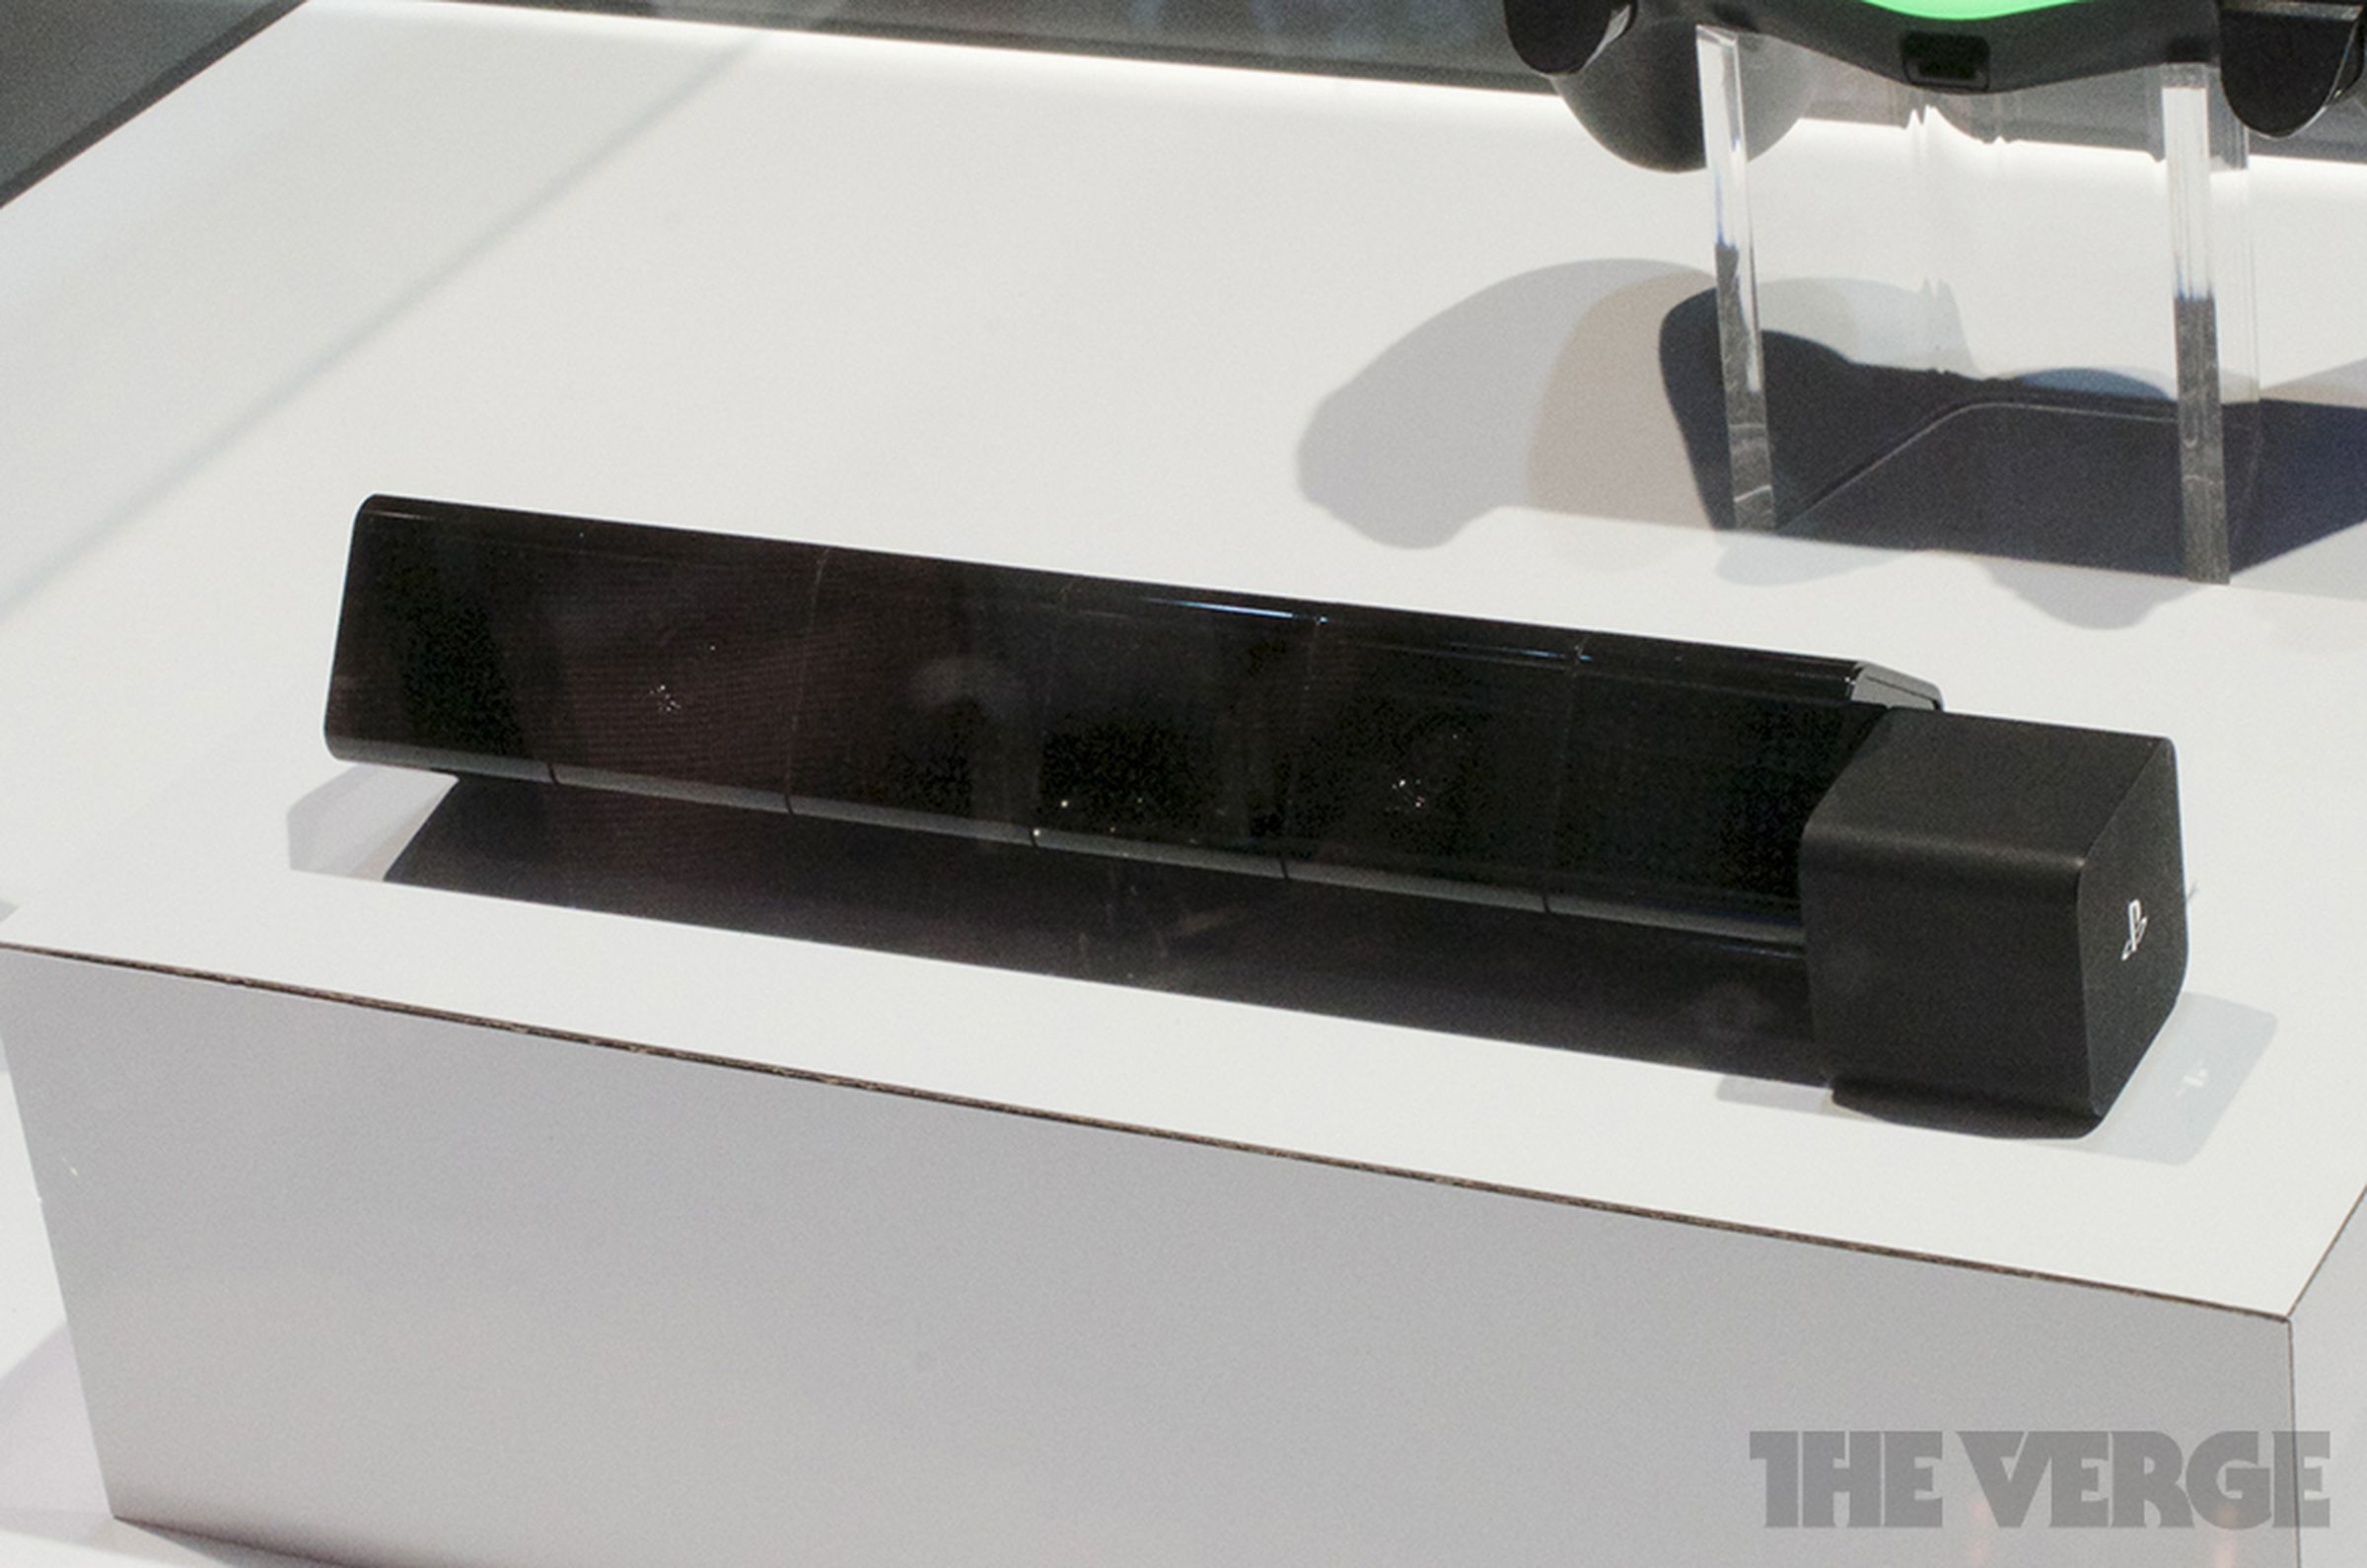 Sony DualShock 4 controller photos